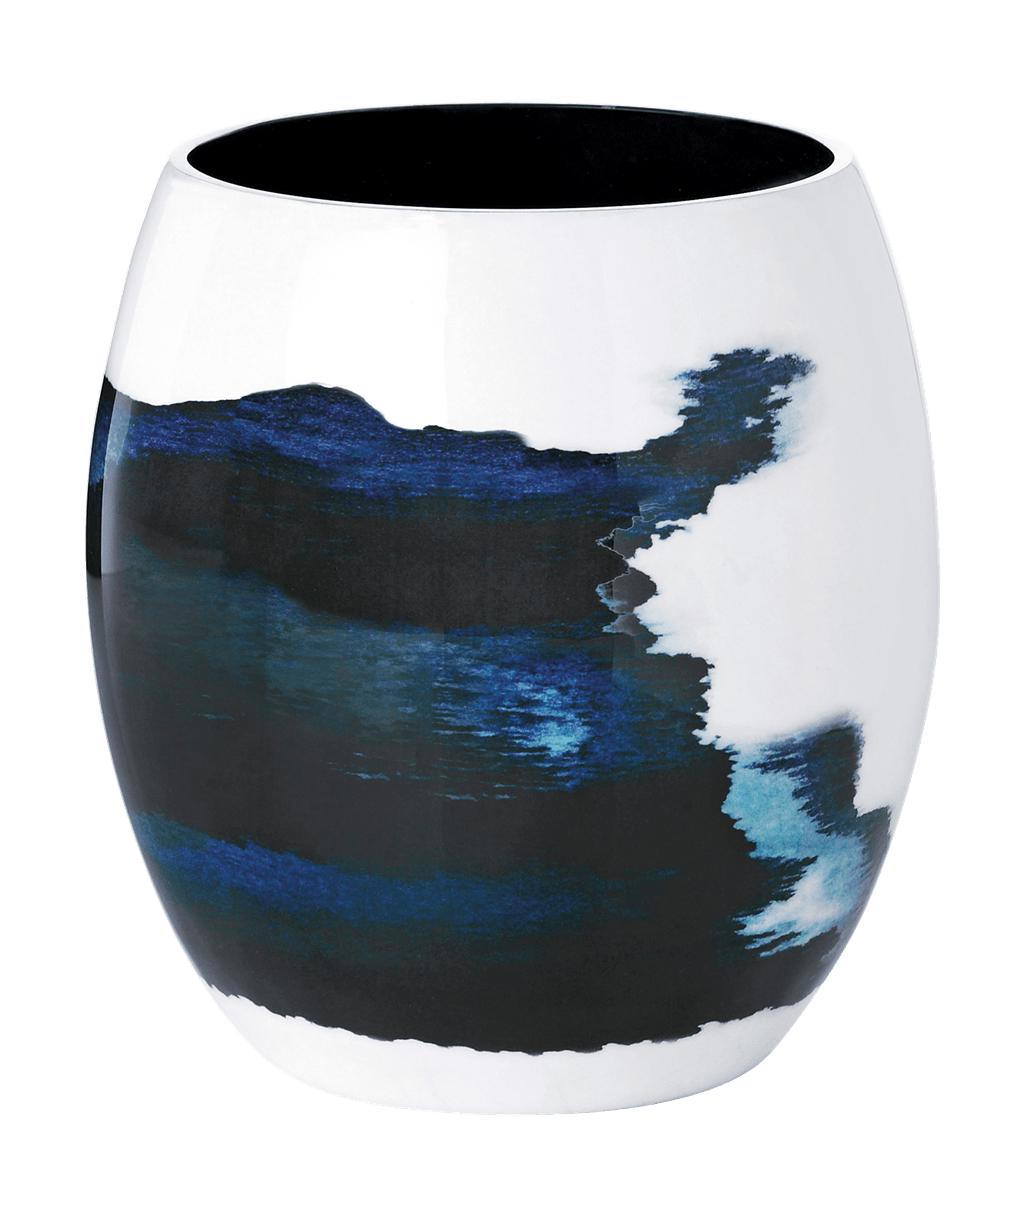 Stelton Stockholm Vase 15,7 cm, vattenlevande